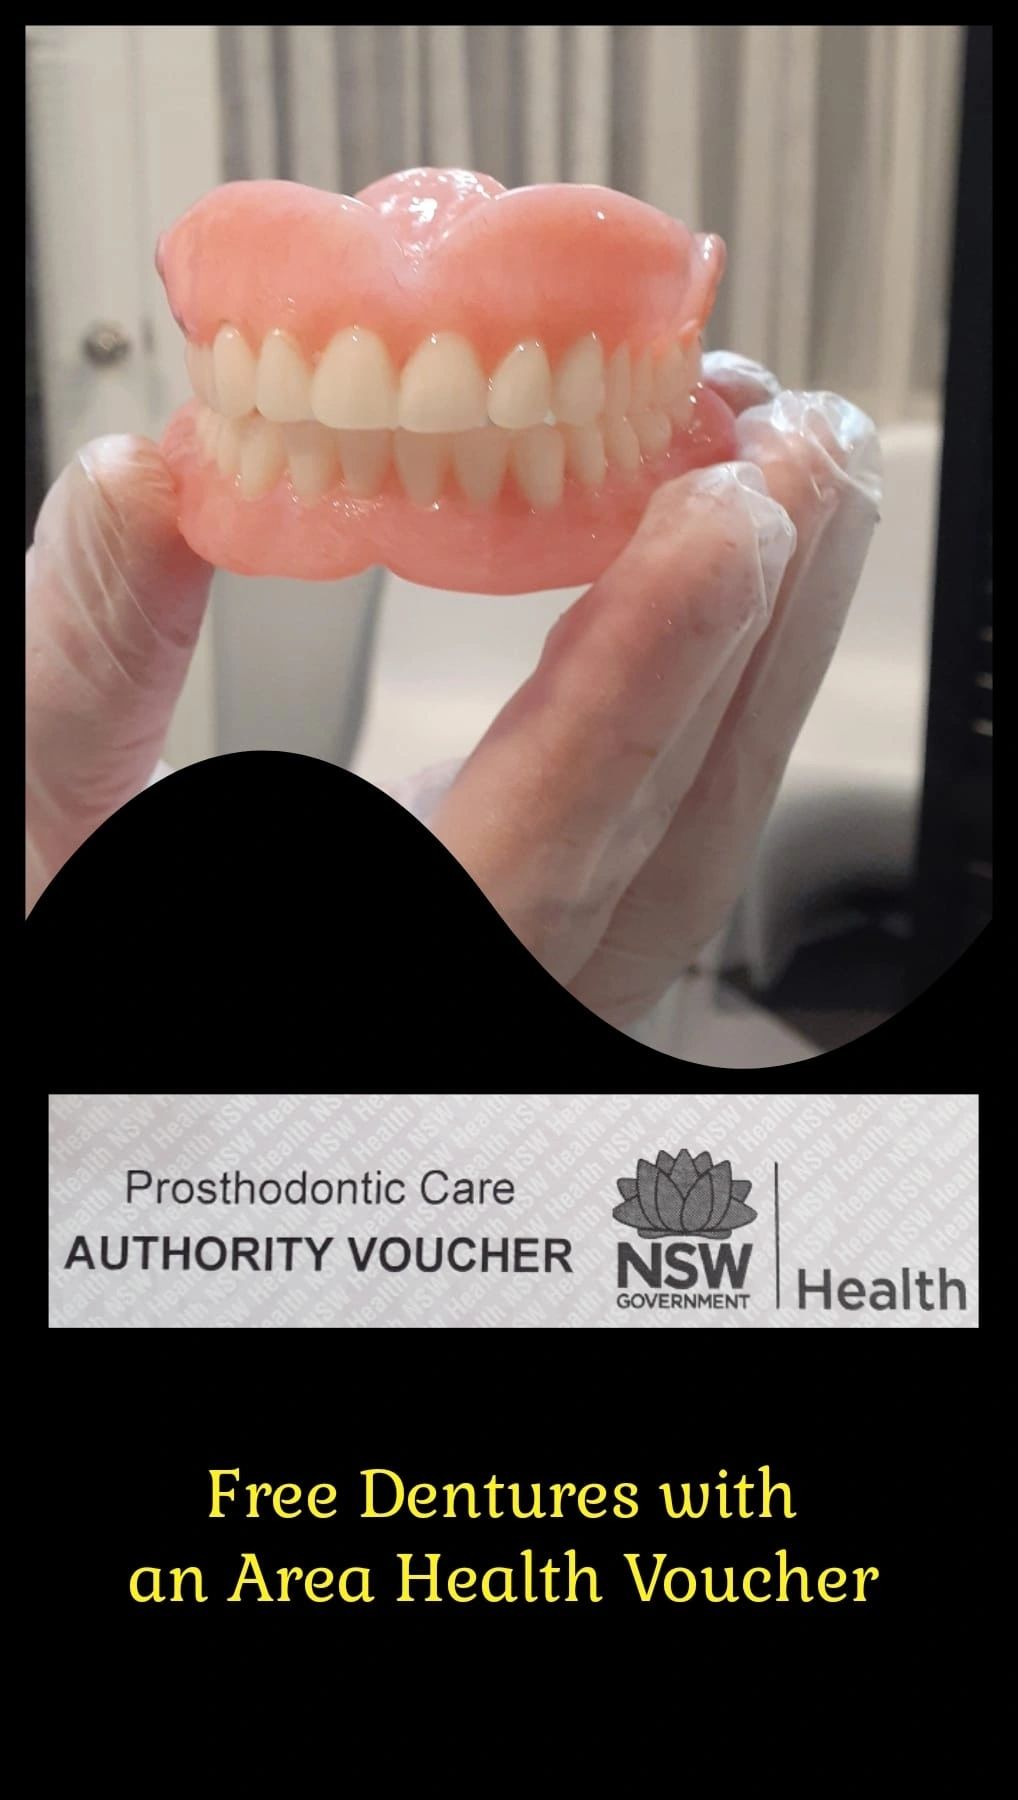 NSW Area Health Voucher 